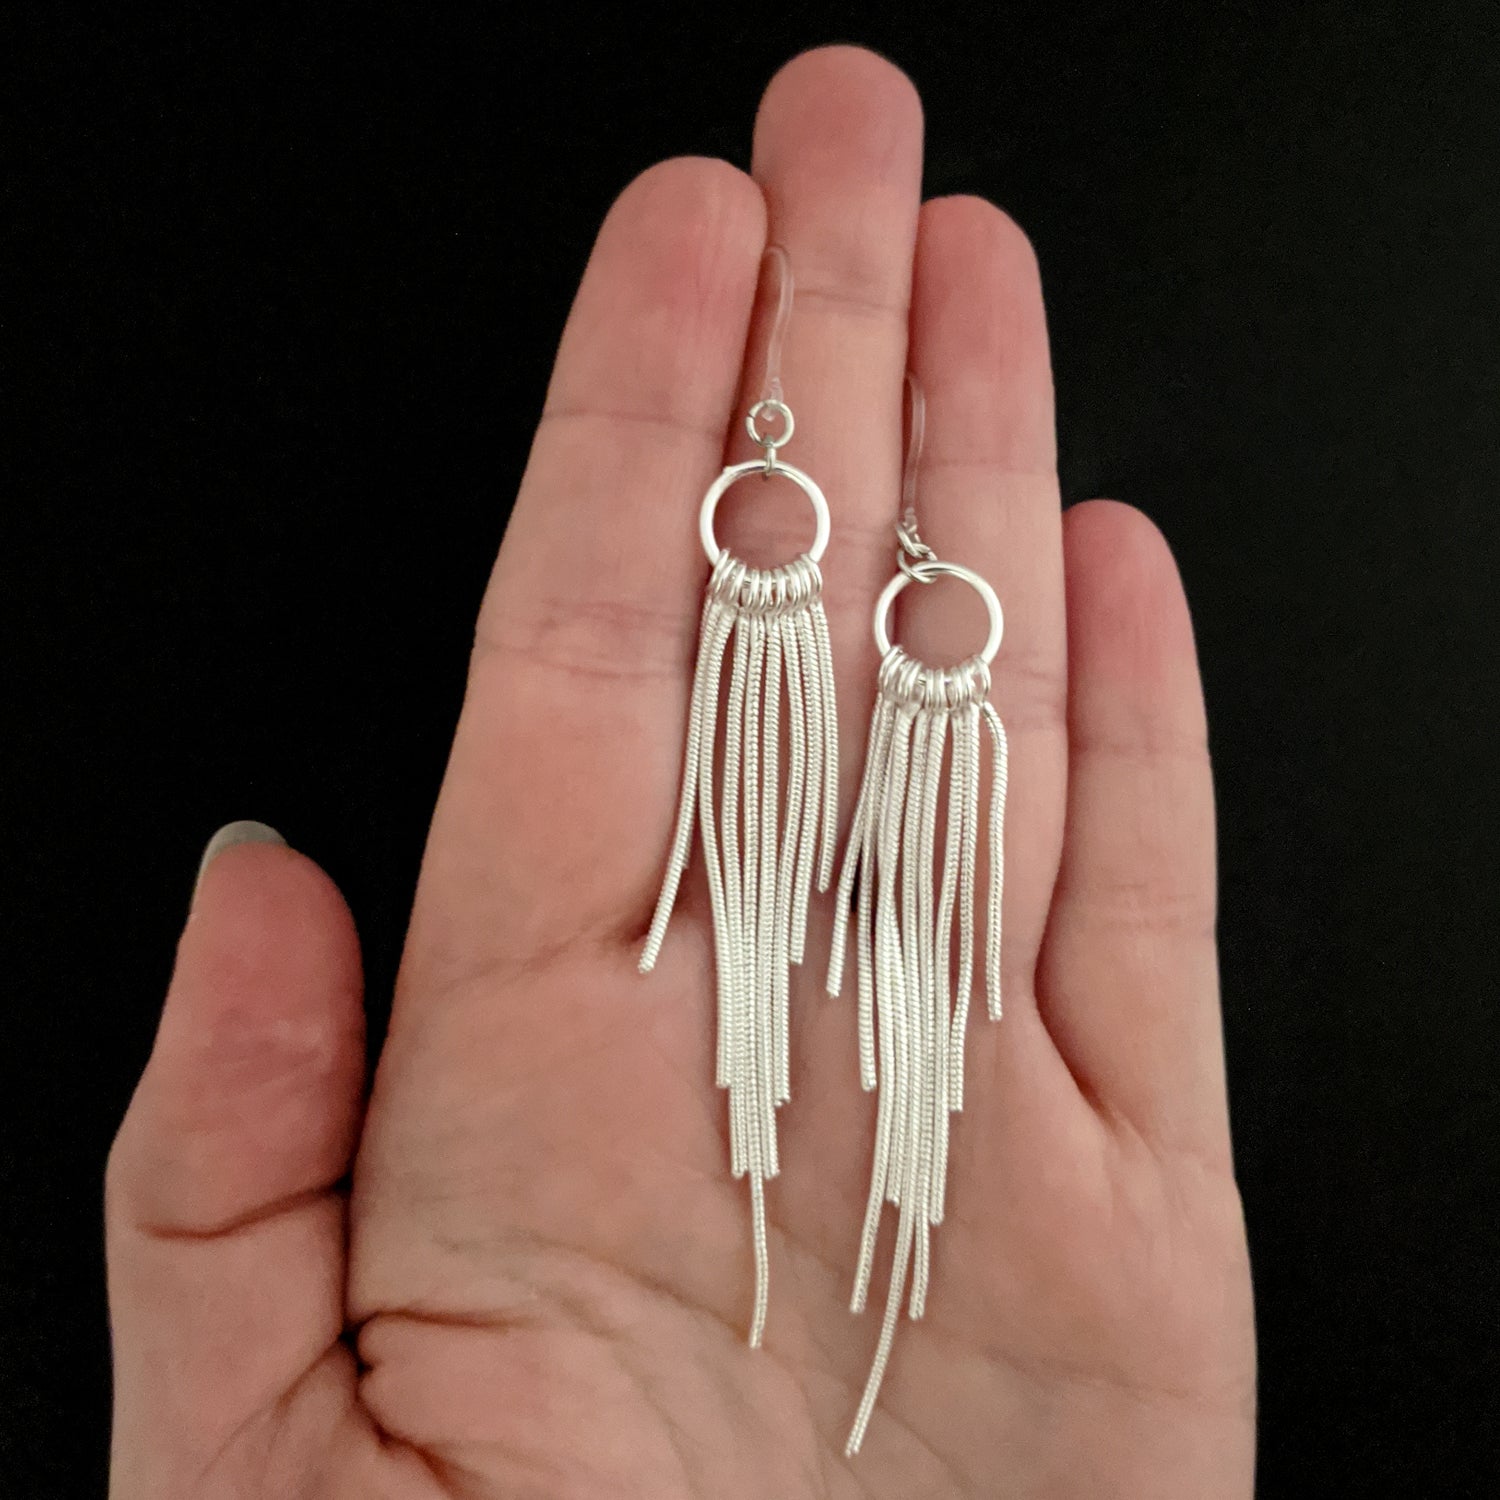 Silver Hoop Rope Earrings (Dangles) - size coparison hand